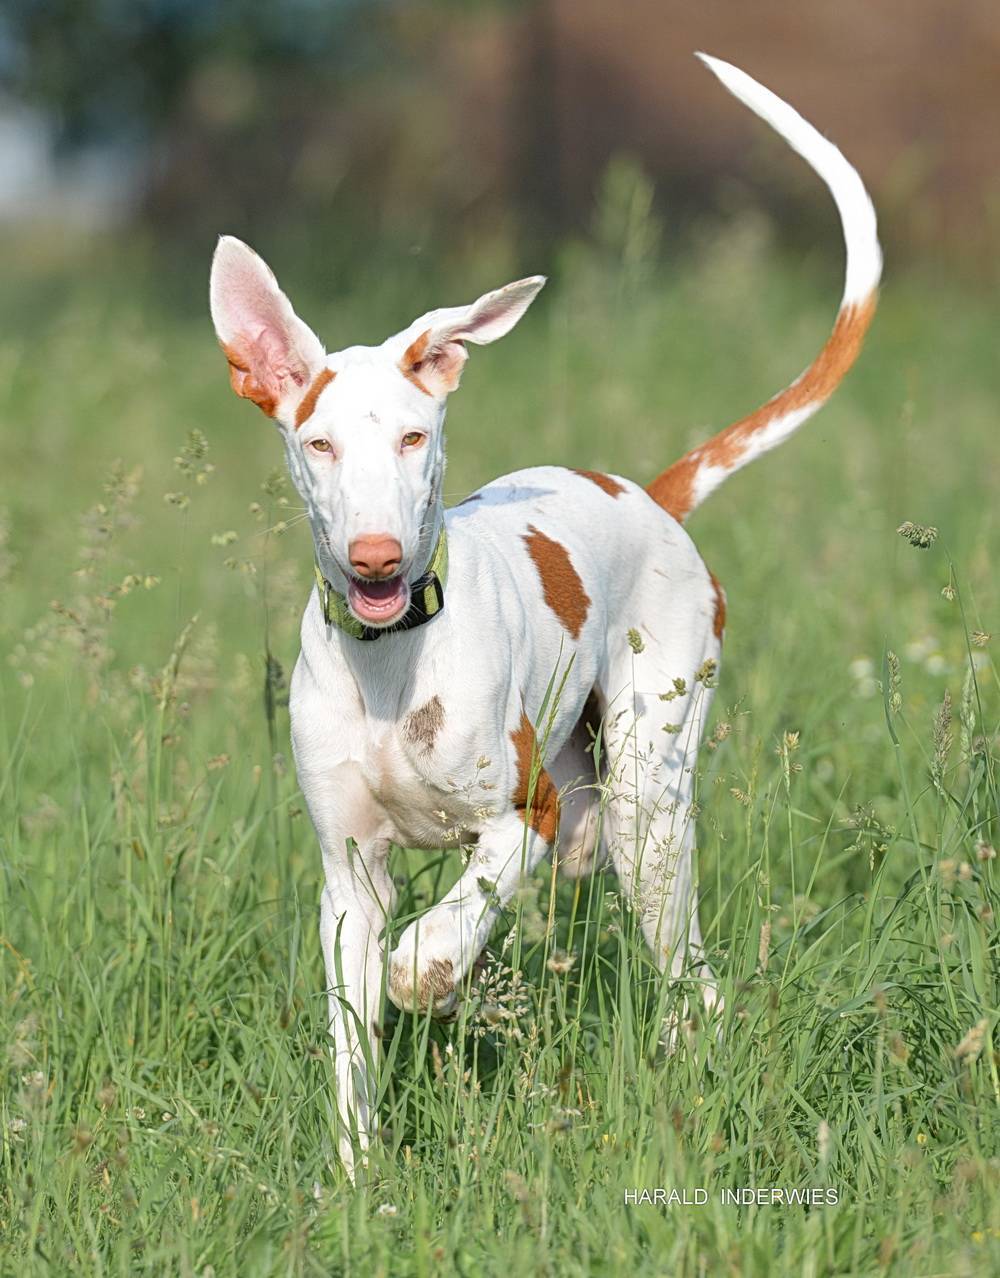 Поденко ибиценко (ивисская борзая) — фото, описание породы собак, особенности